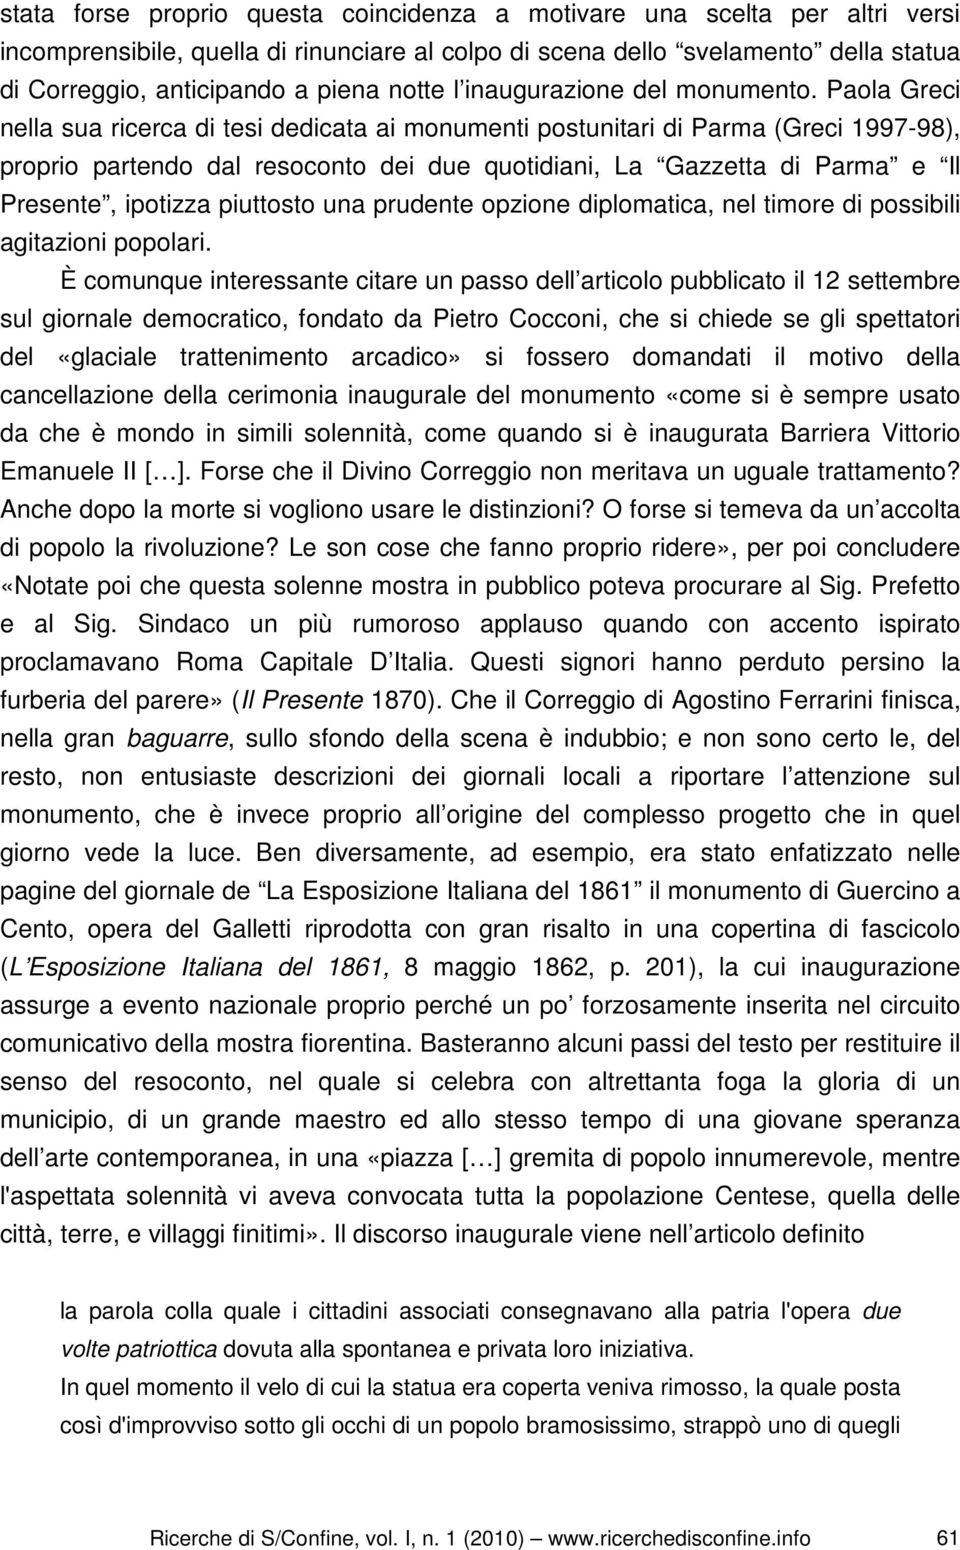 Paola Greci nella sua ricerca di tesi dedicata ai monumenti postunitari di Parma (Greci 1997-98), proprio partendo dal resoconto dei due quotidiani, La Gazzetta di Parma e Il Presente, ipotizza